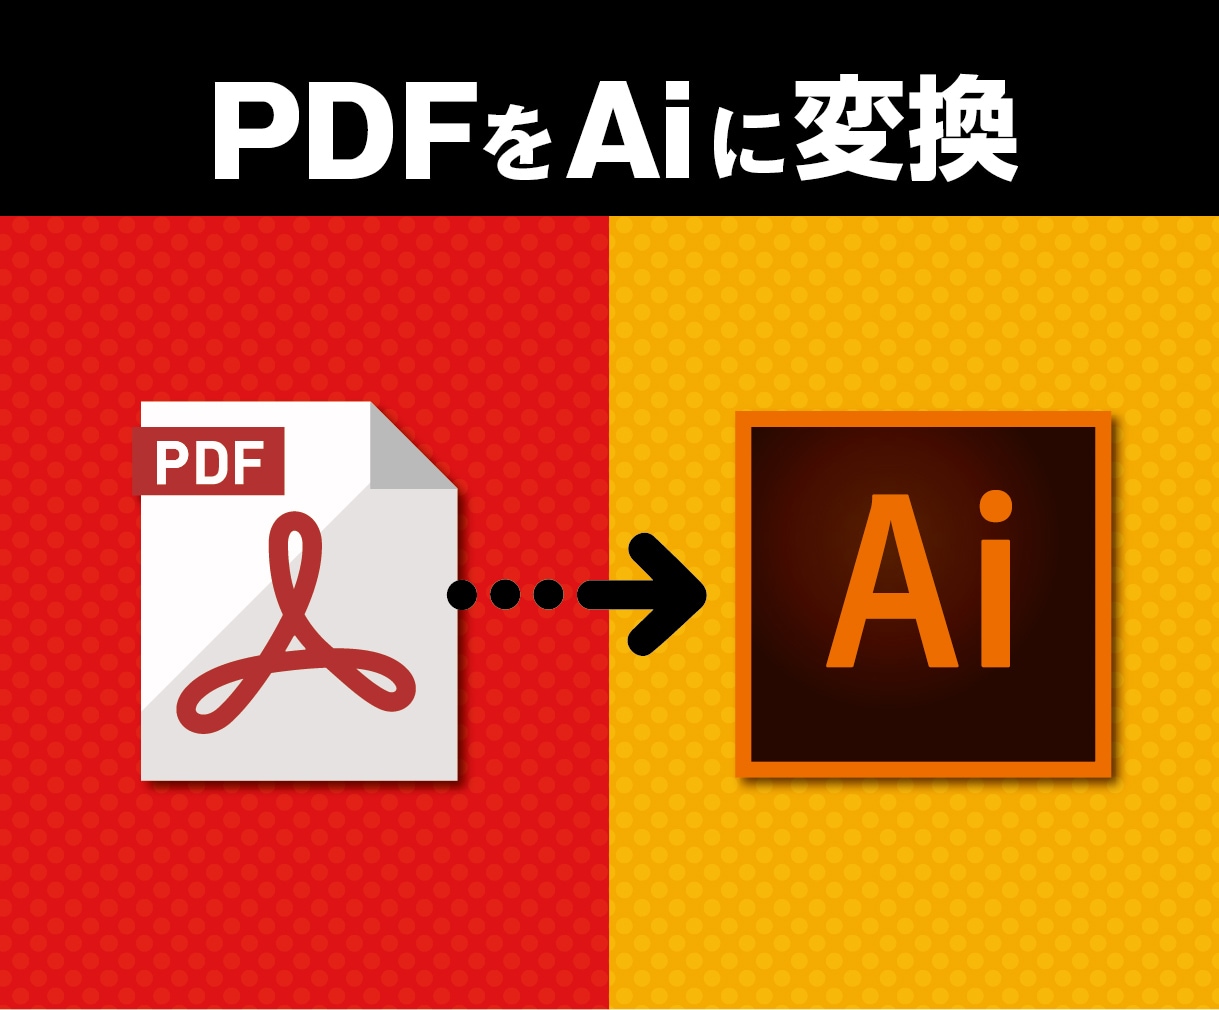 PDFデータをAIデータに変換致します 編集できないPDFデータを編集可能なAIデータに変換します。 イメージ1